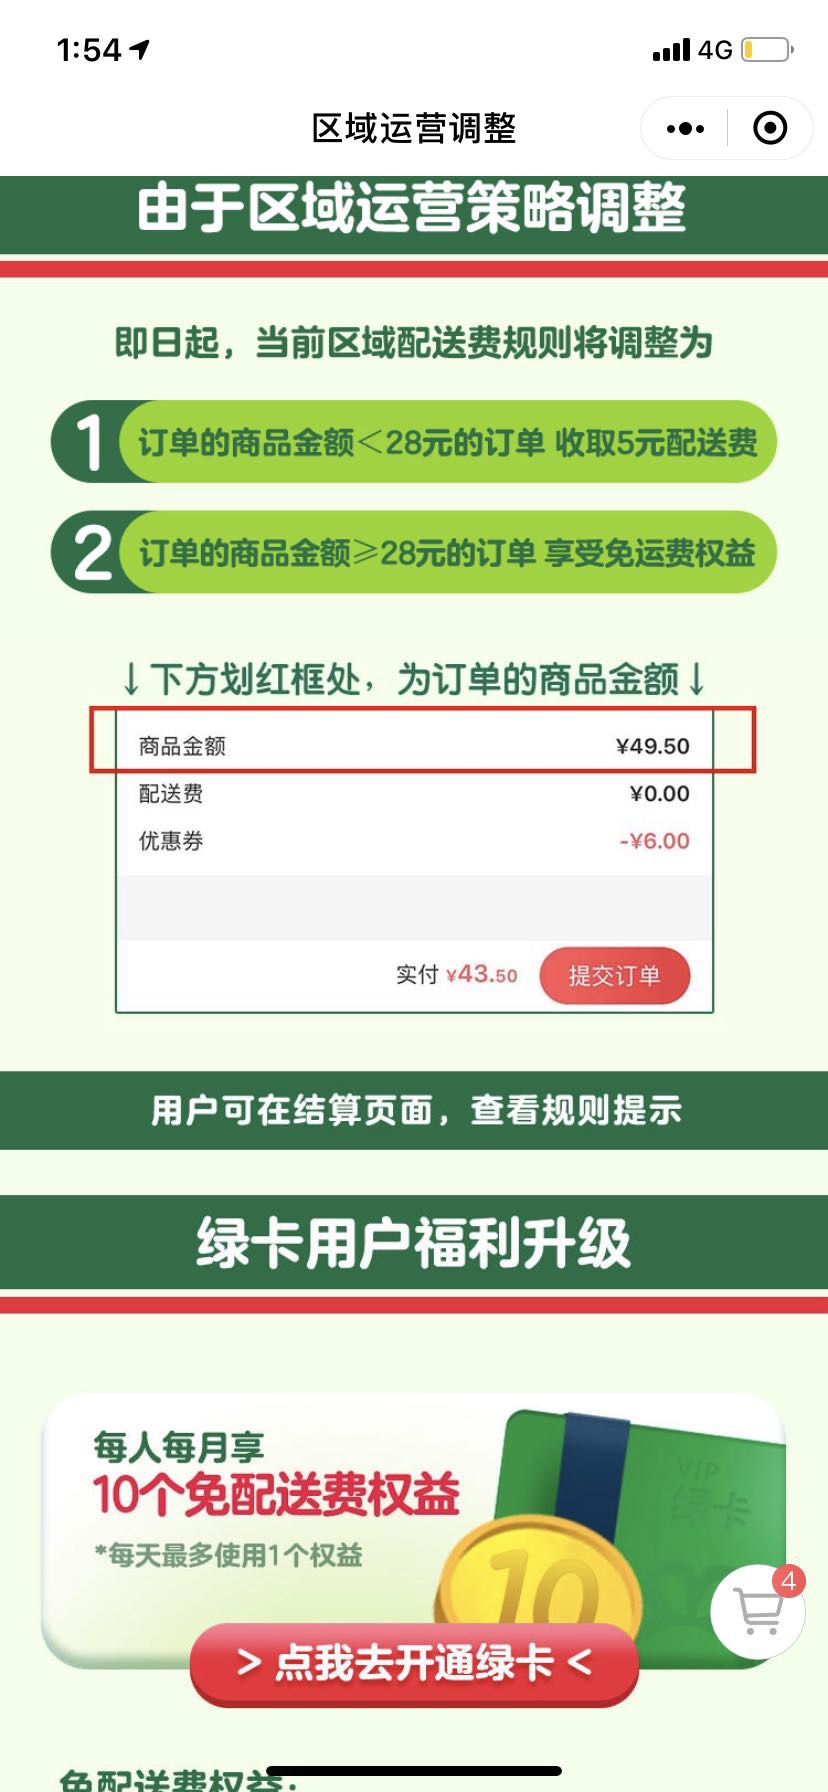 叮咚买菜要收运费了？上海地区小于28元订单收取5元配送费